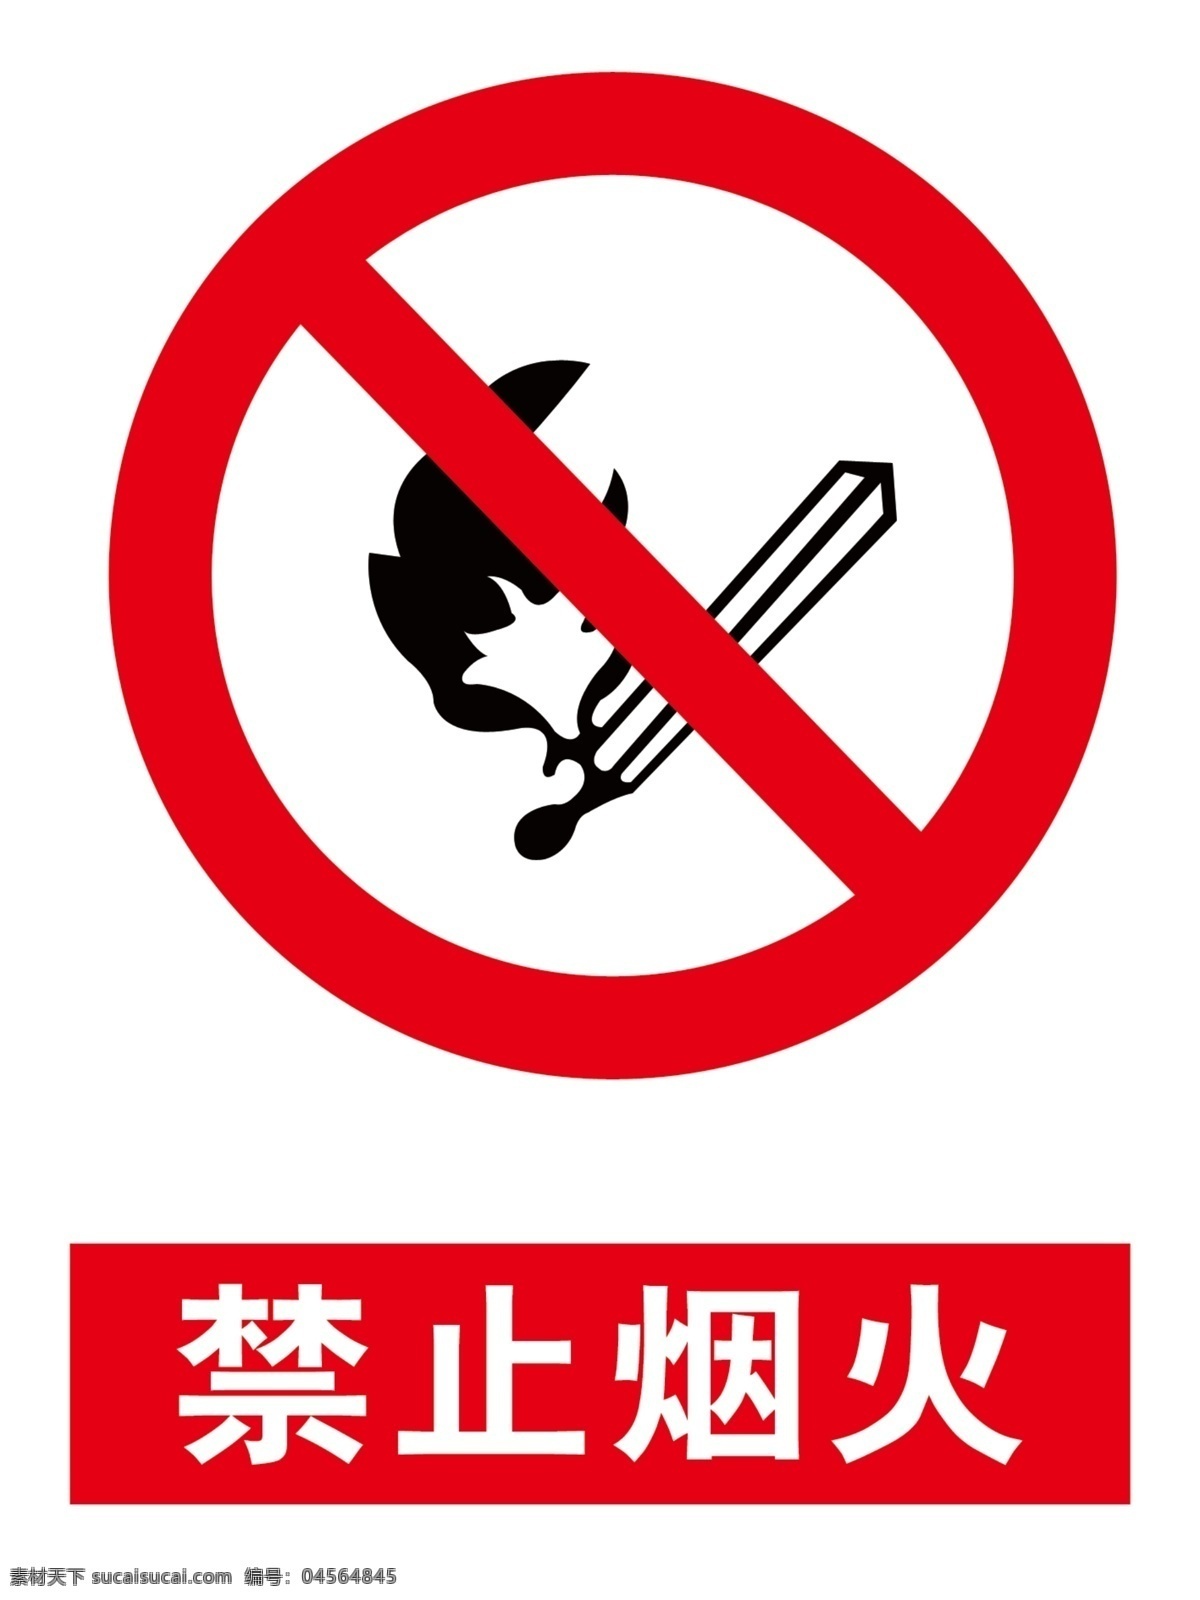 禁止烟火 温馨提示 禁止 烟火 牌子 室内广告设计